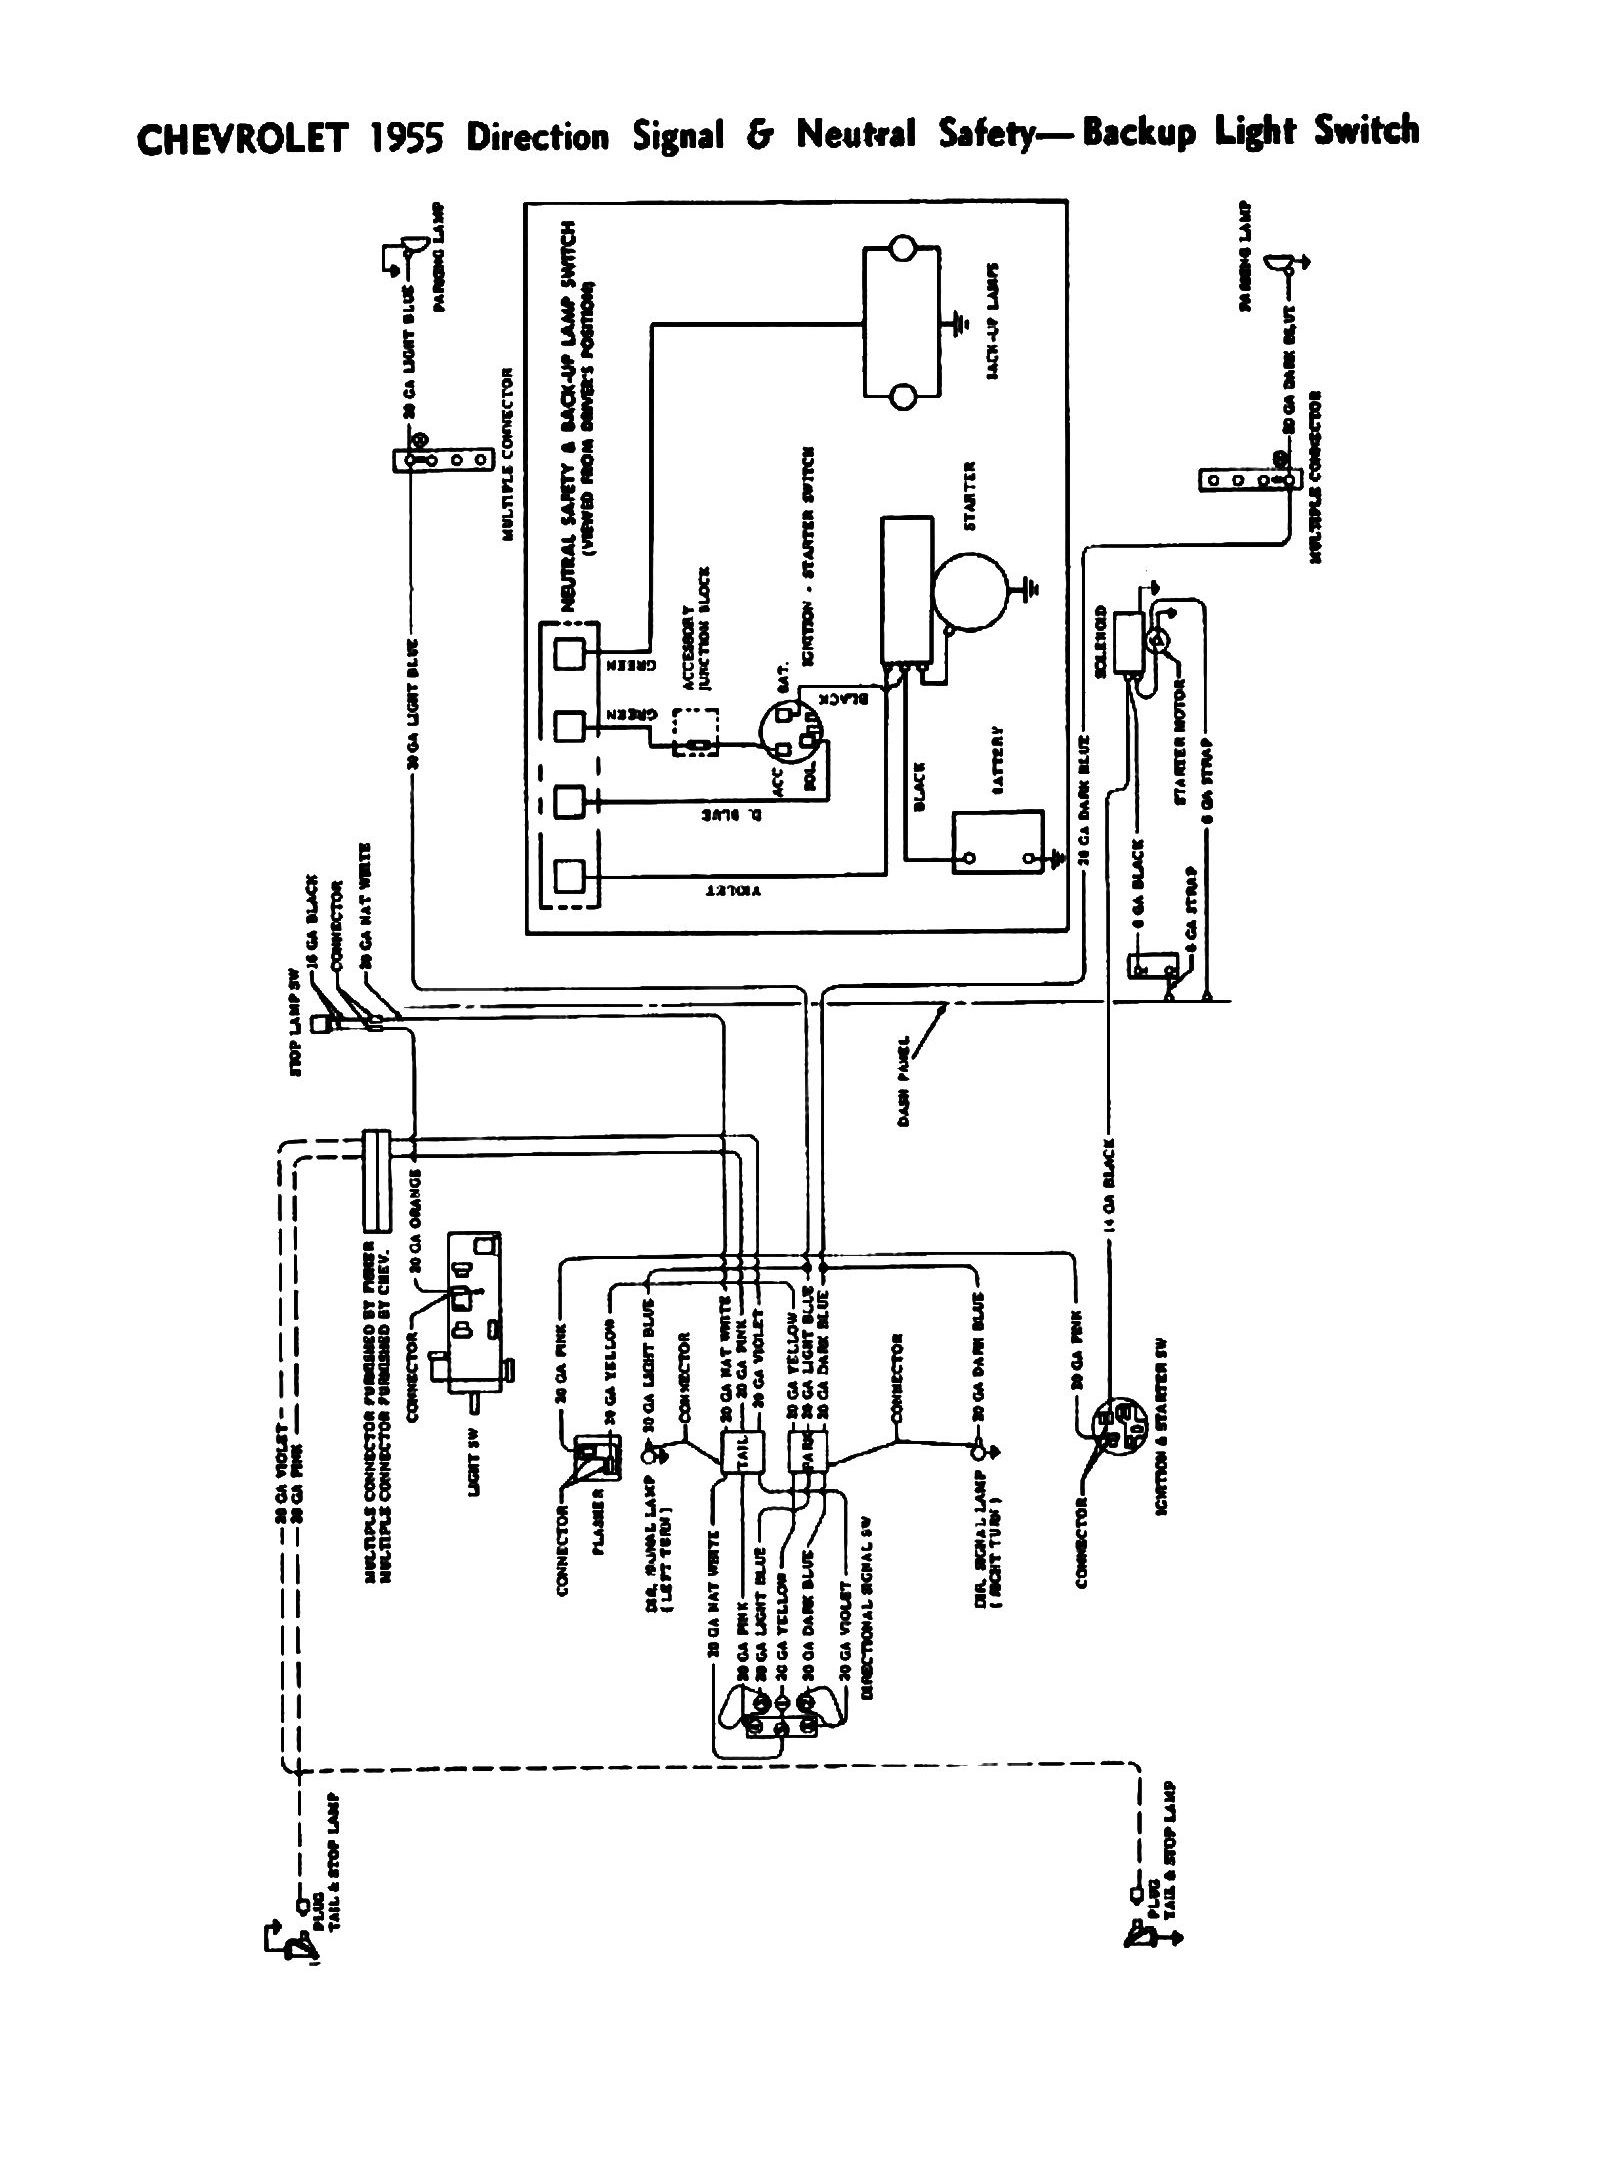 Kubota Wiring Diagram L Auto Diagrams Instructions Kubota B7800 Wiring Diagram Auto Diagrams Instructions